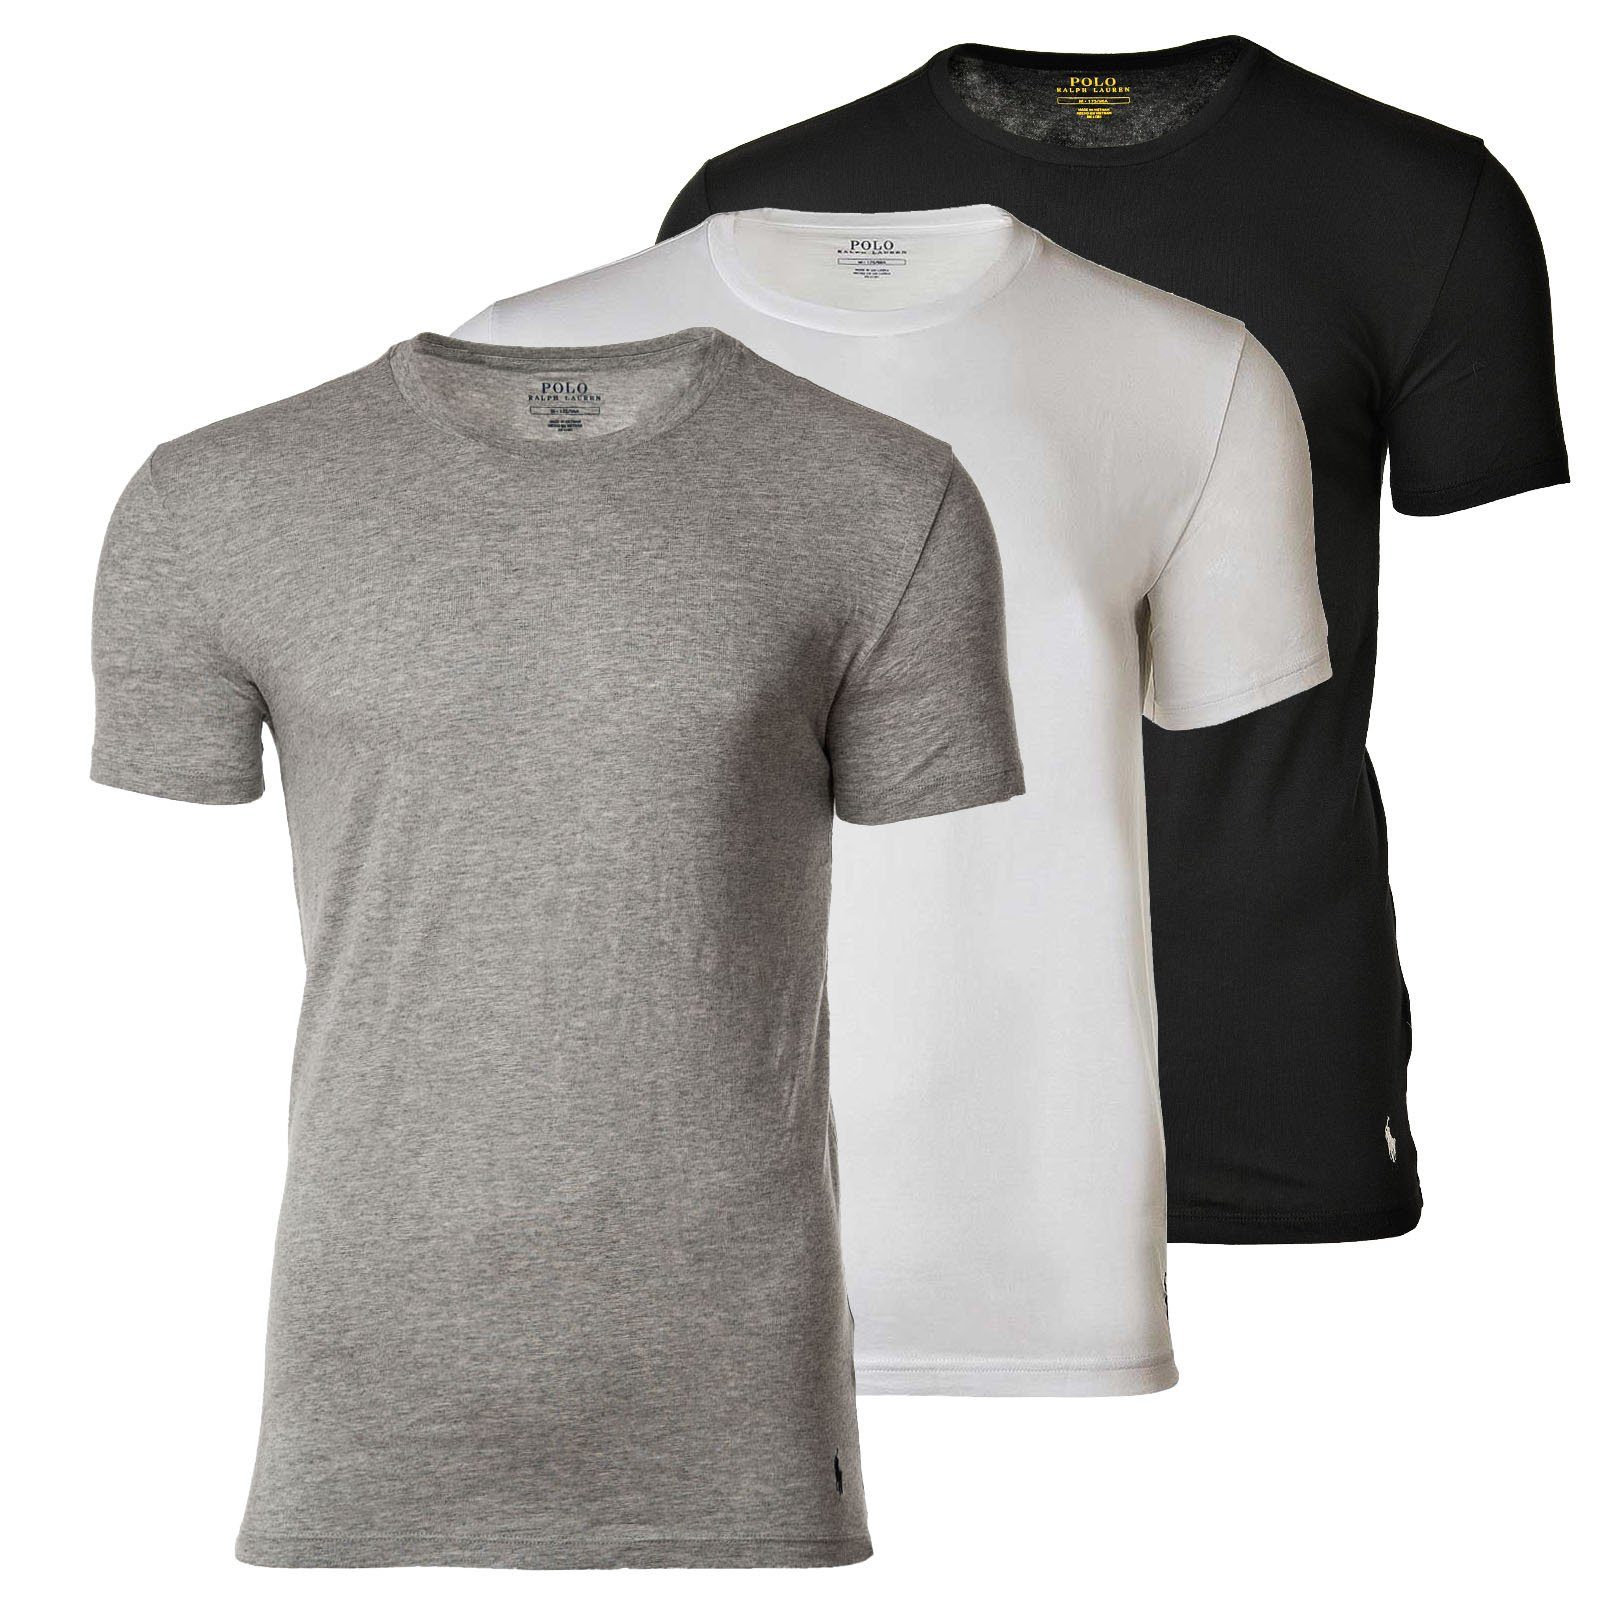 Polo Ralph Lauren T-Shirt 3er Pack Herren T-Shirts, Rundhals, Halbarm schwarz/weiß/grau